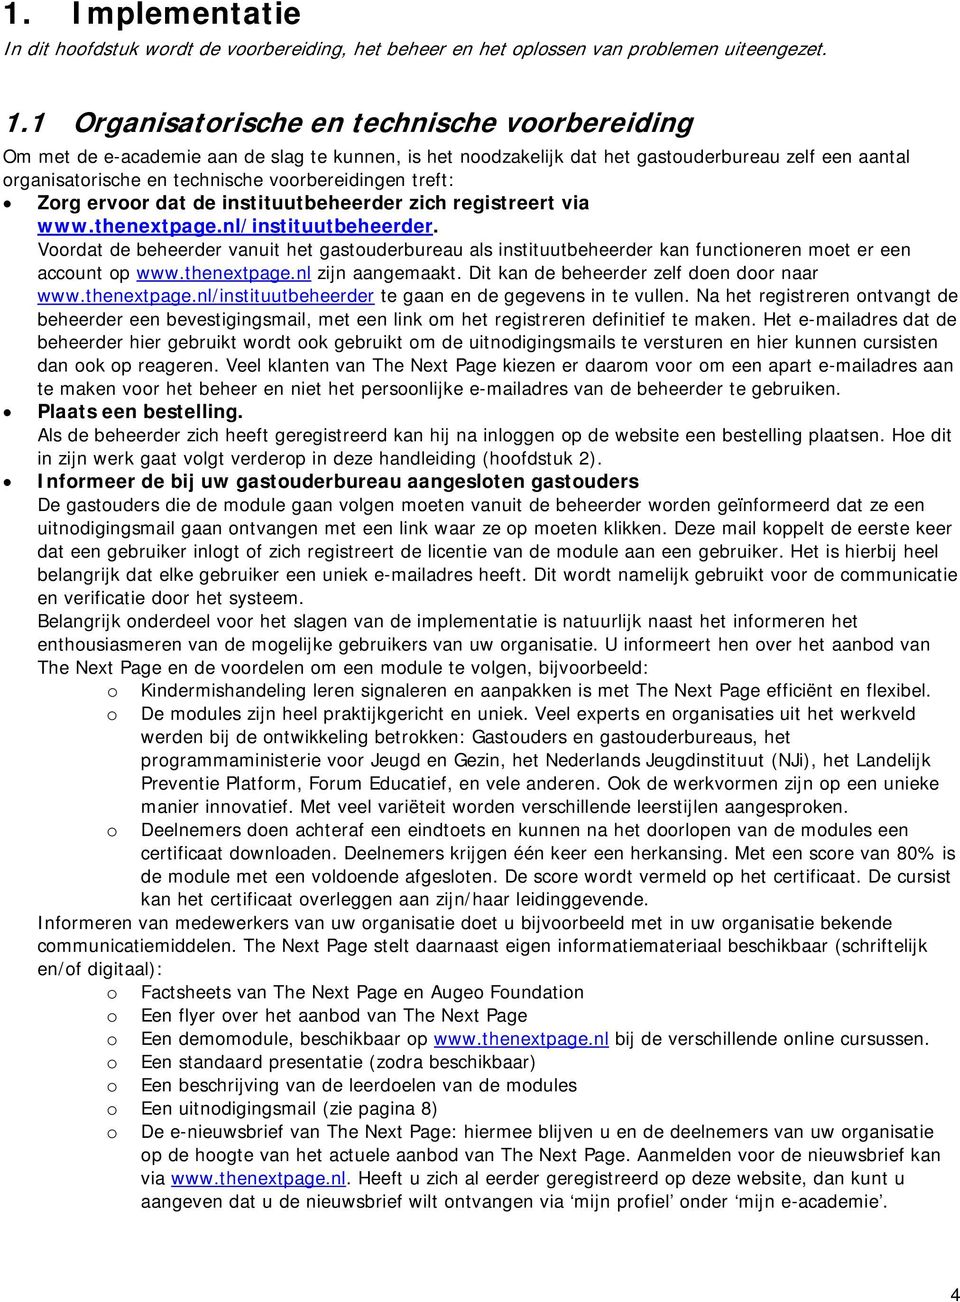 treft: Zorg ervoor dat de instituutbeheerder zich registreert via www.thenextpage.nl/instituutbeheerder.